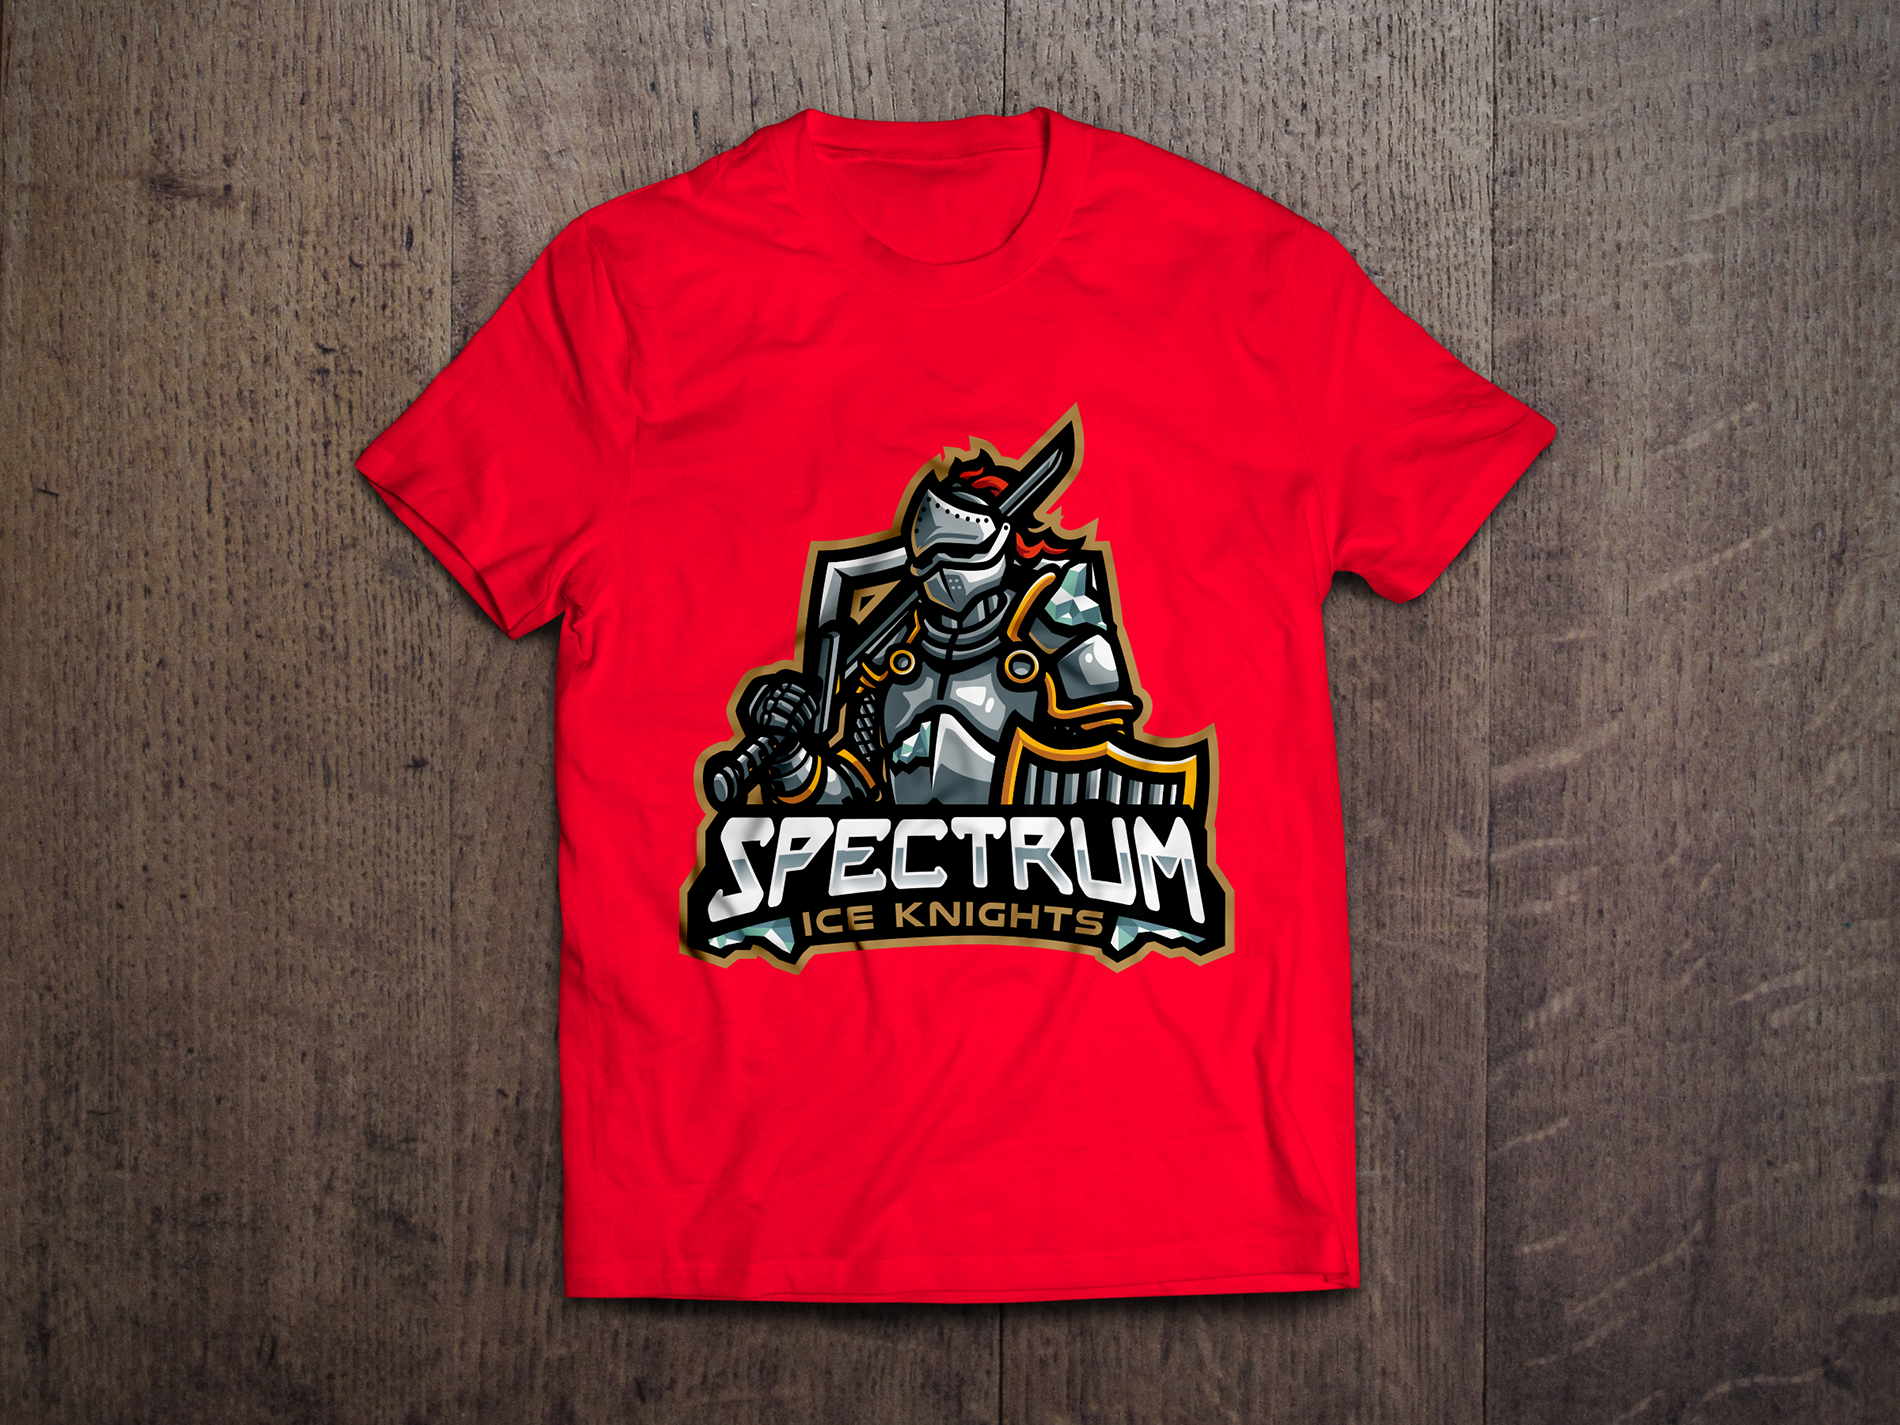 Spectrum Ice Knights Red Logo Tee - Redwolf Jersey Works